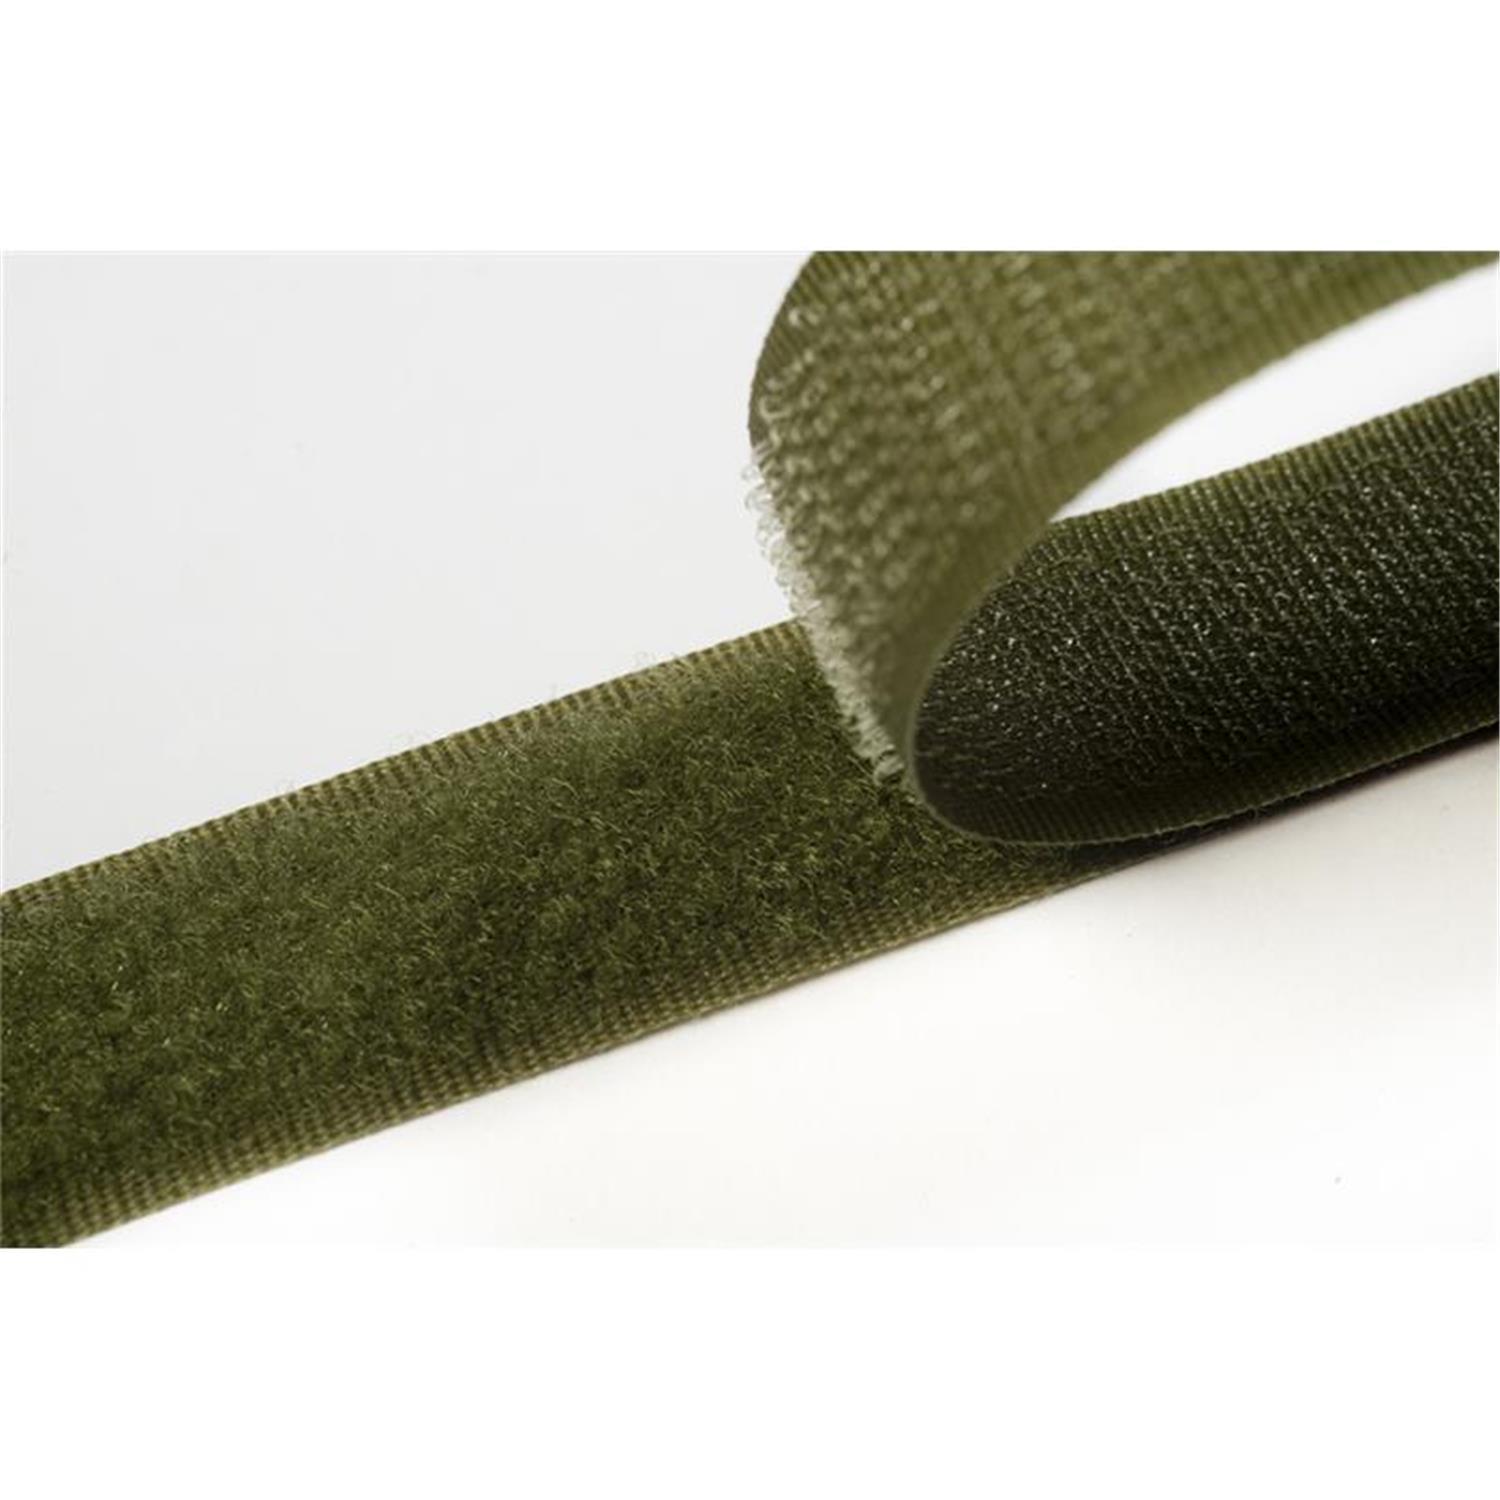 Klettband zum aufnähen, 38 mm, olivgrün #09 4 Meter